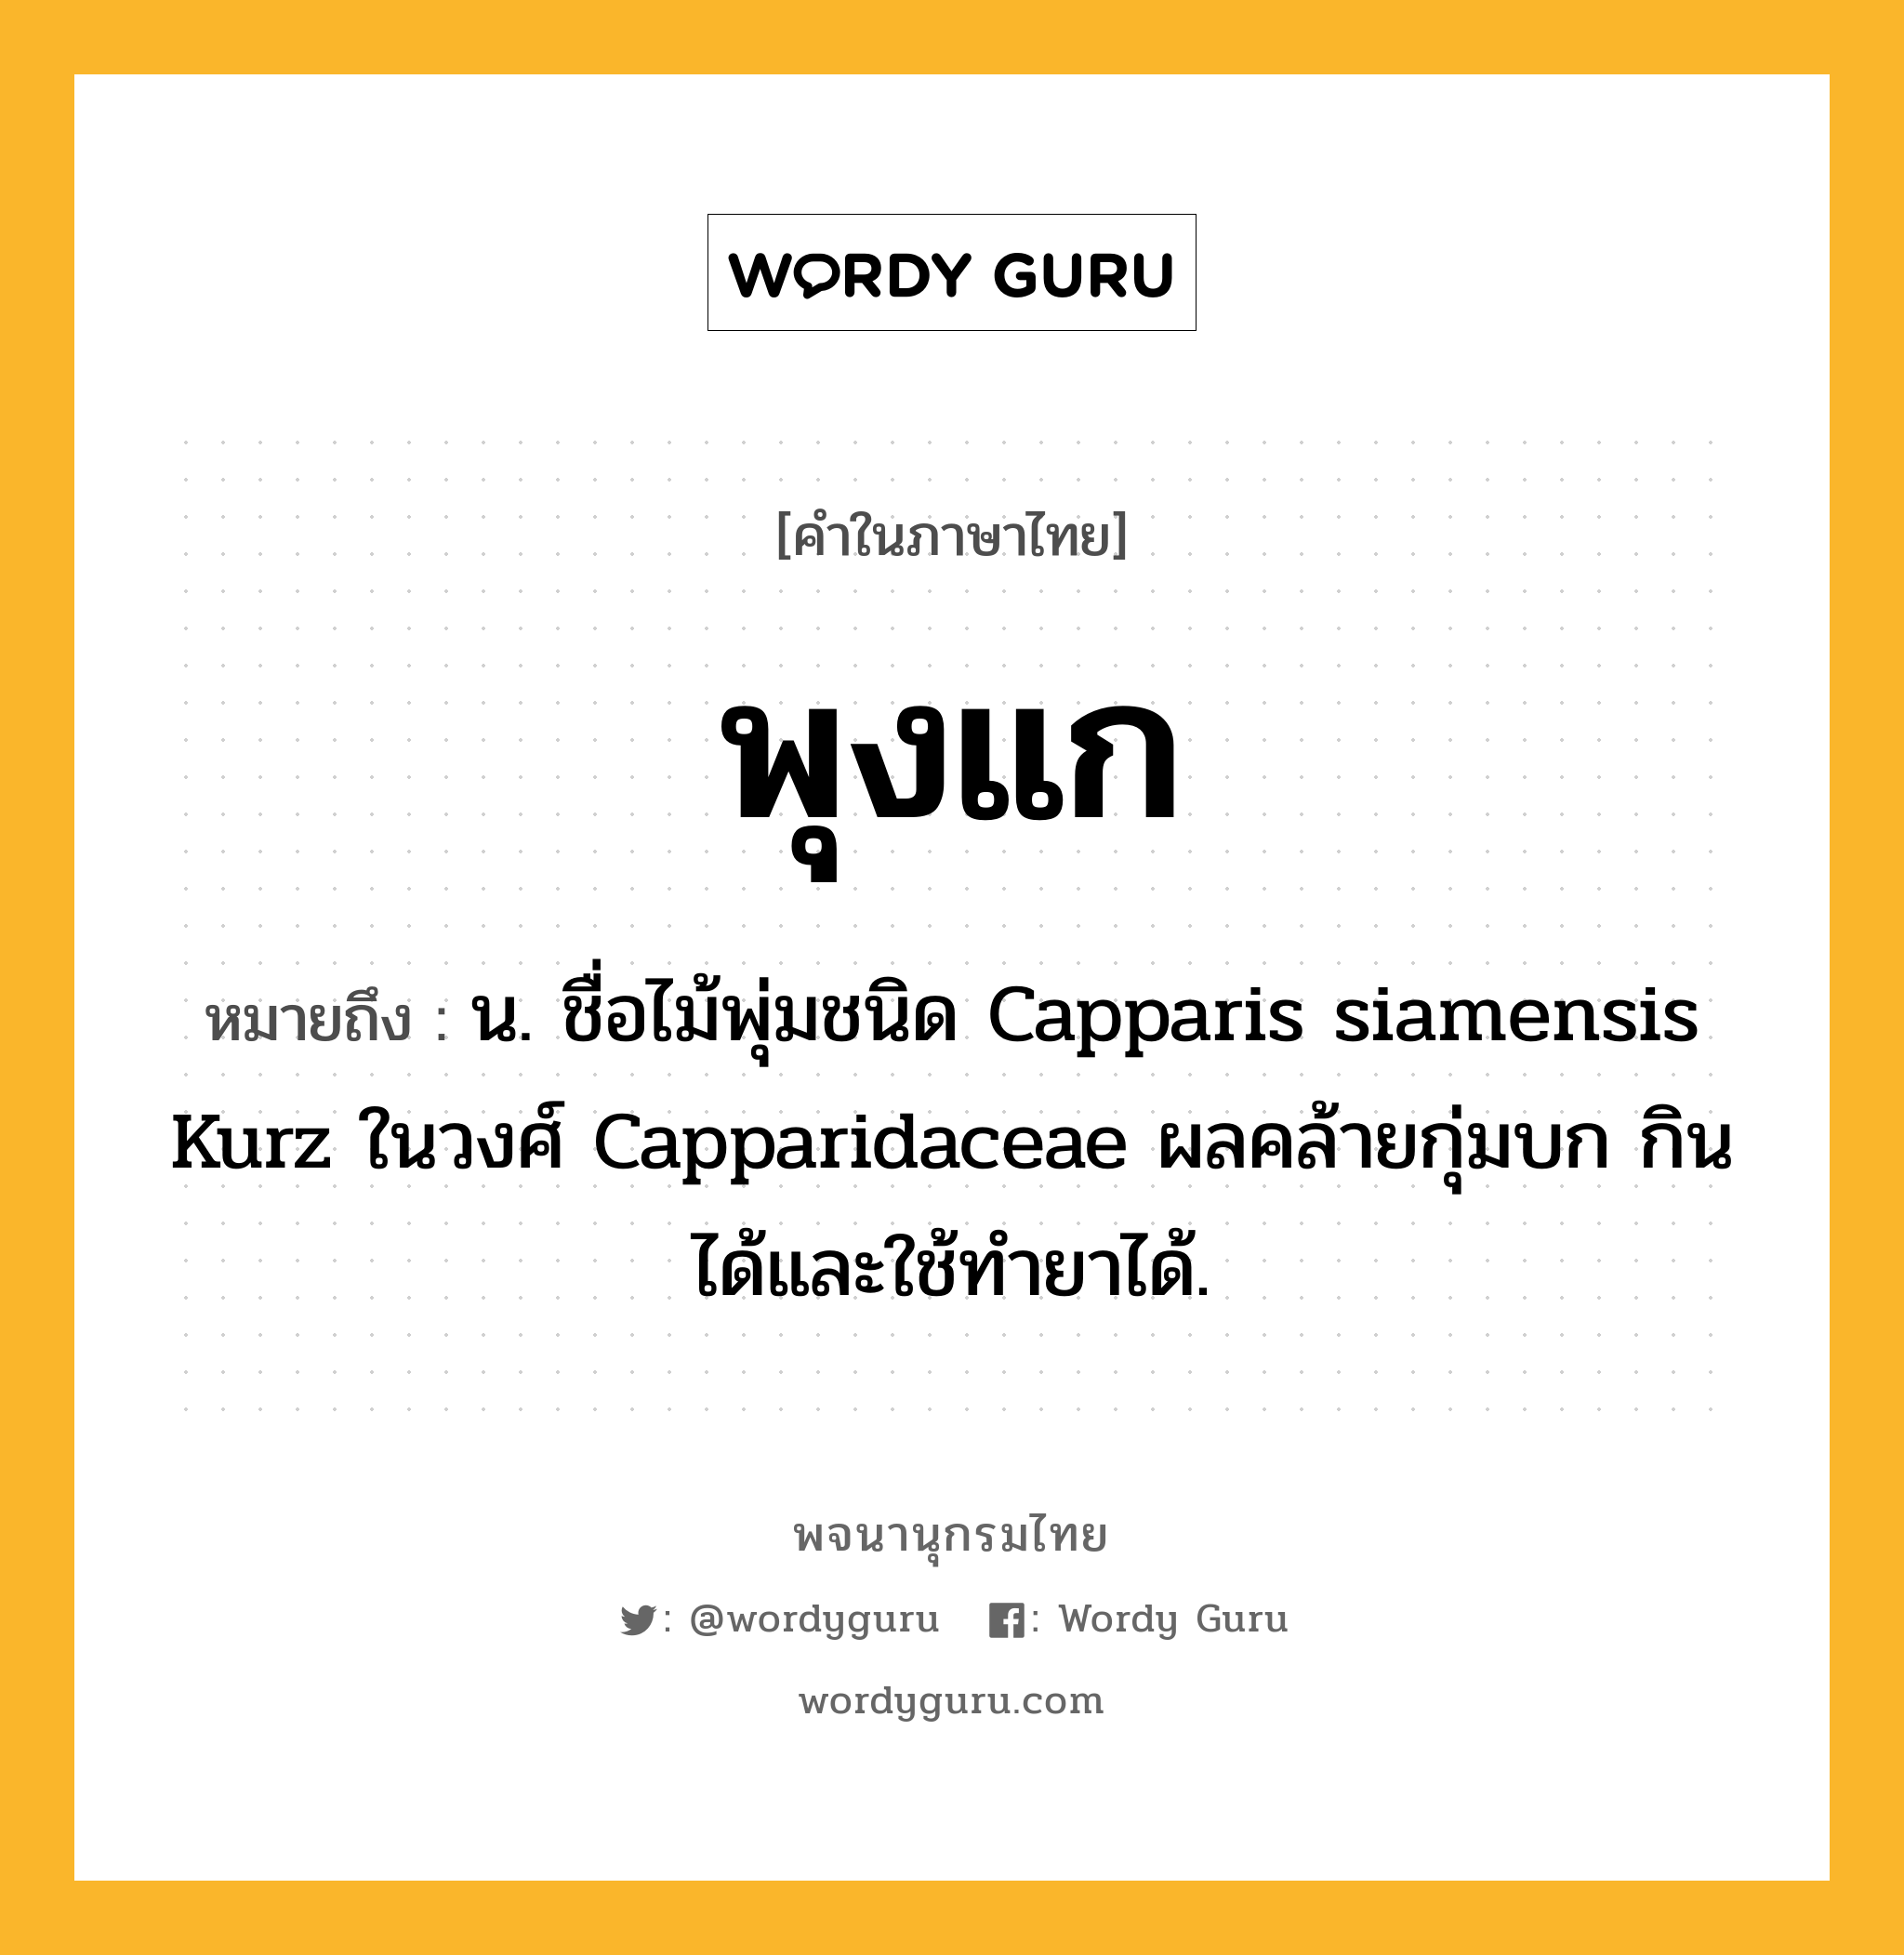 พุงแก หมายถึงอะไร?, คำในภาษาไทย พุงแก หมายถึง น. ชื่อไม้พุ่มชนิด Capparis siamensis Kurz ในวงศ์ Capparidaceae ผลคล้ายกุ่มบก กินได้และใช้ทํายาได้.